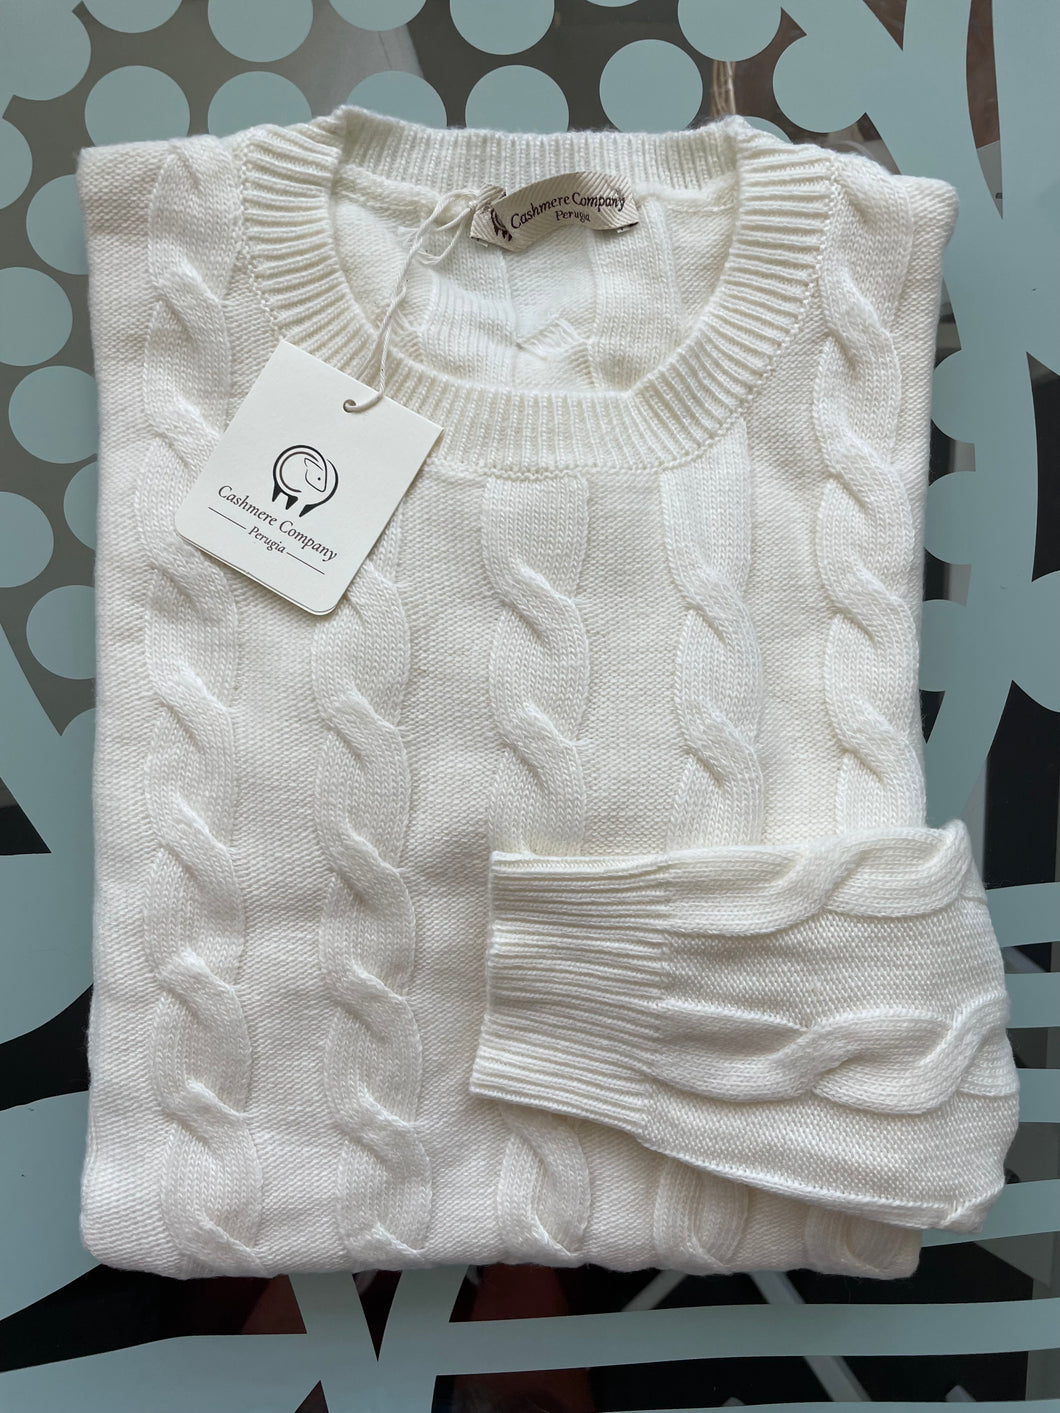 Cashmere Company maglia donna bianco sc-30% girocollo trecce  Cashmere e Lana